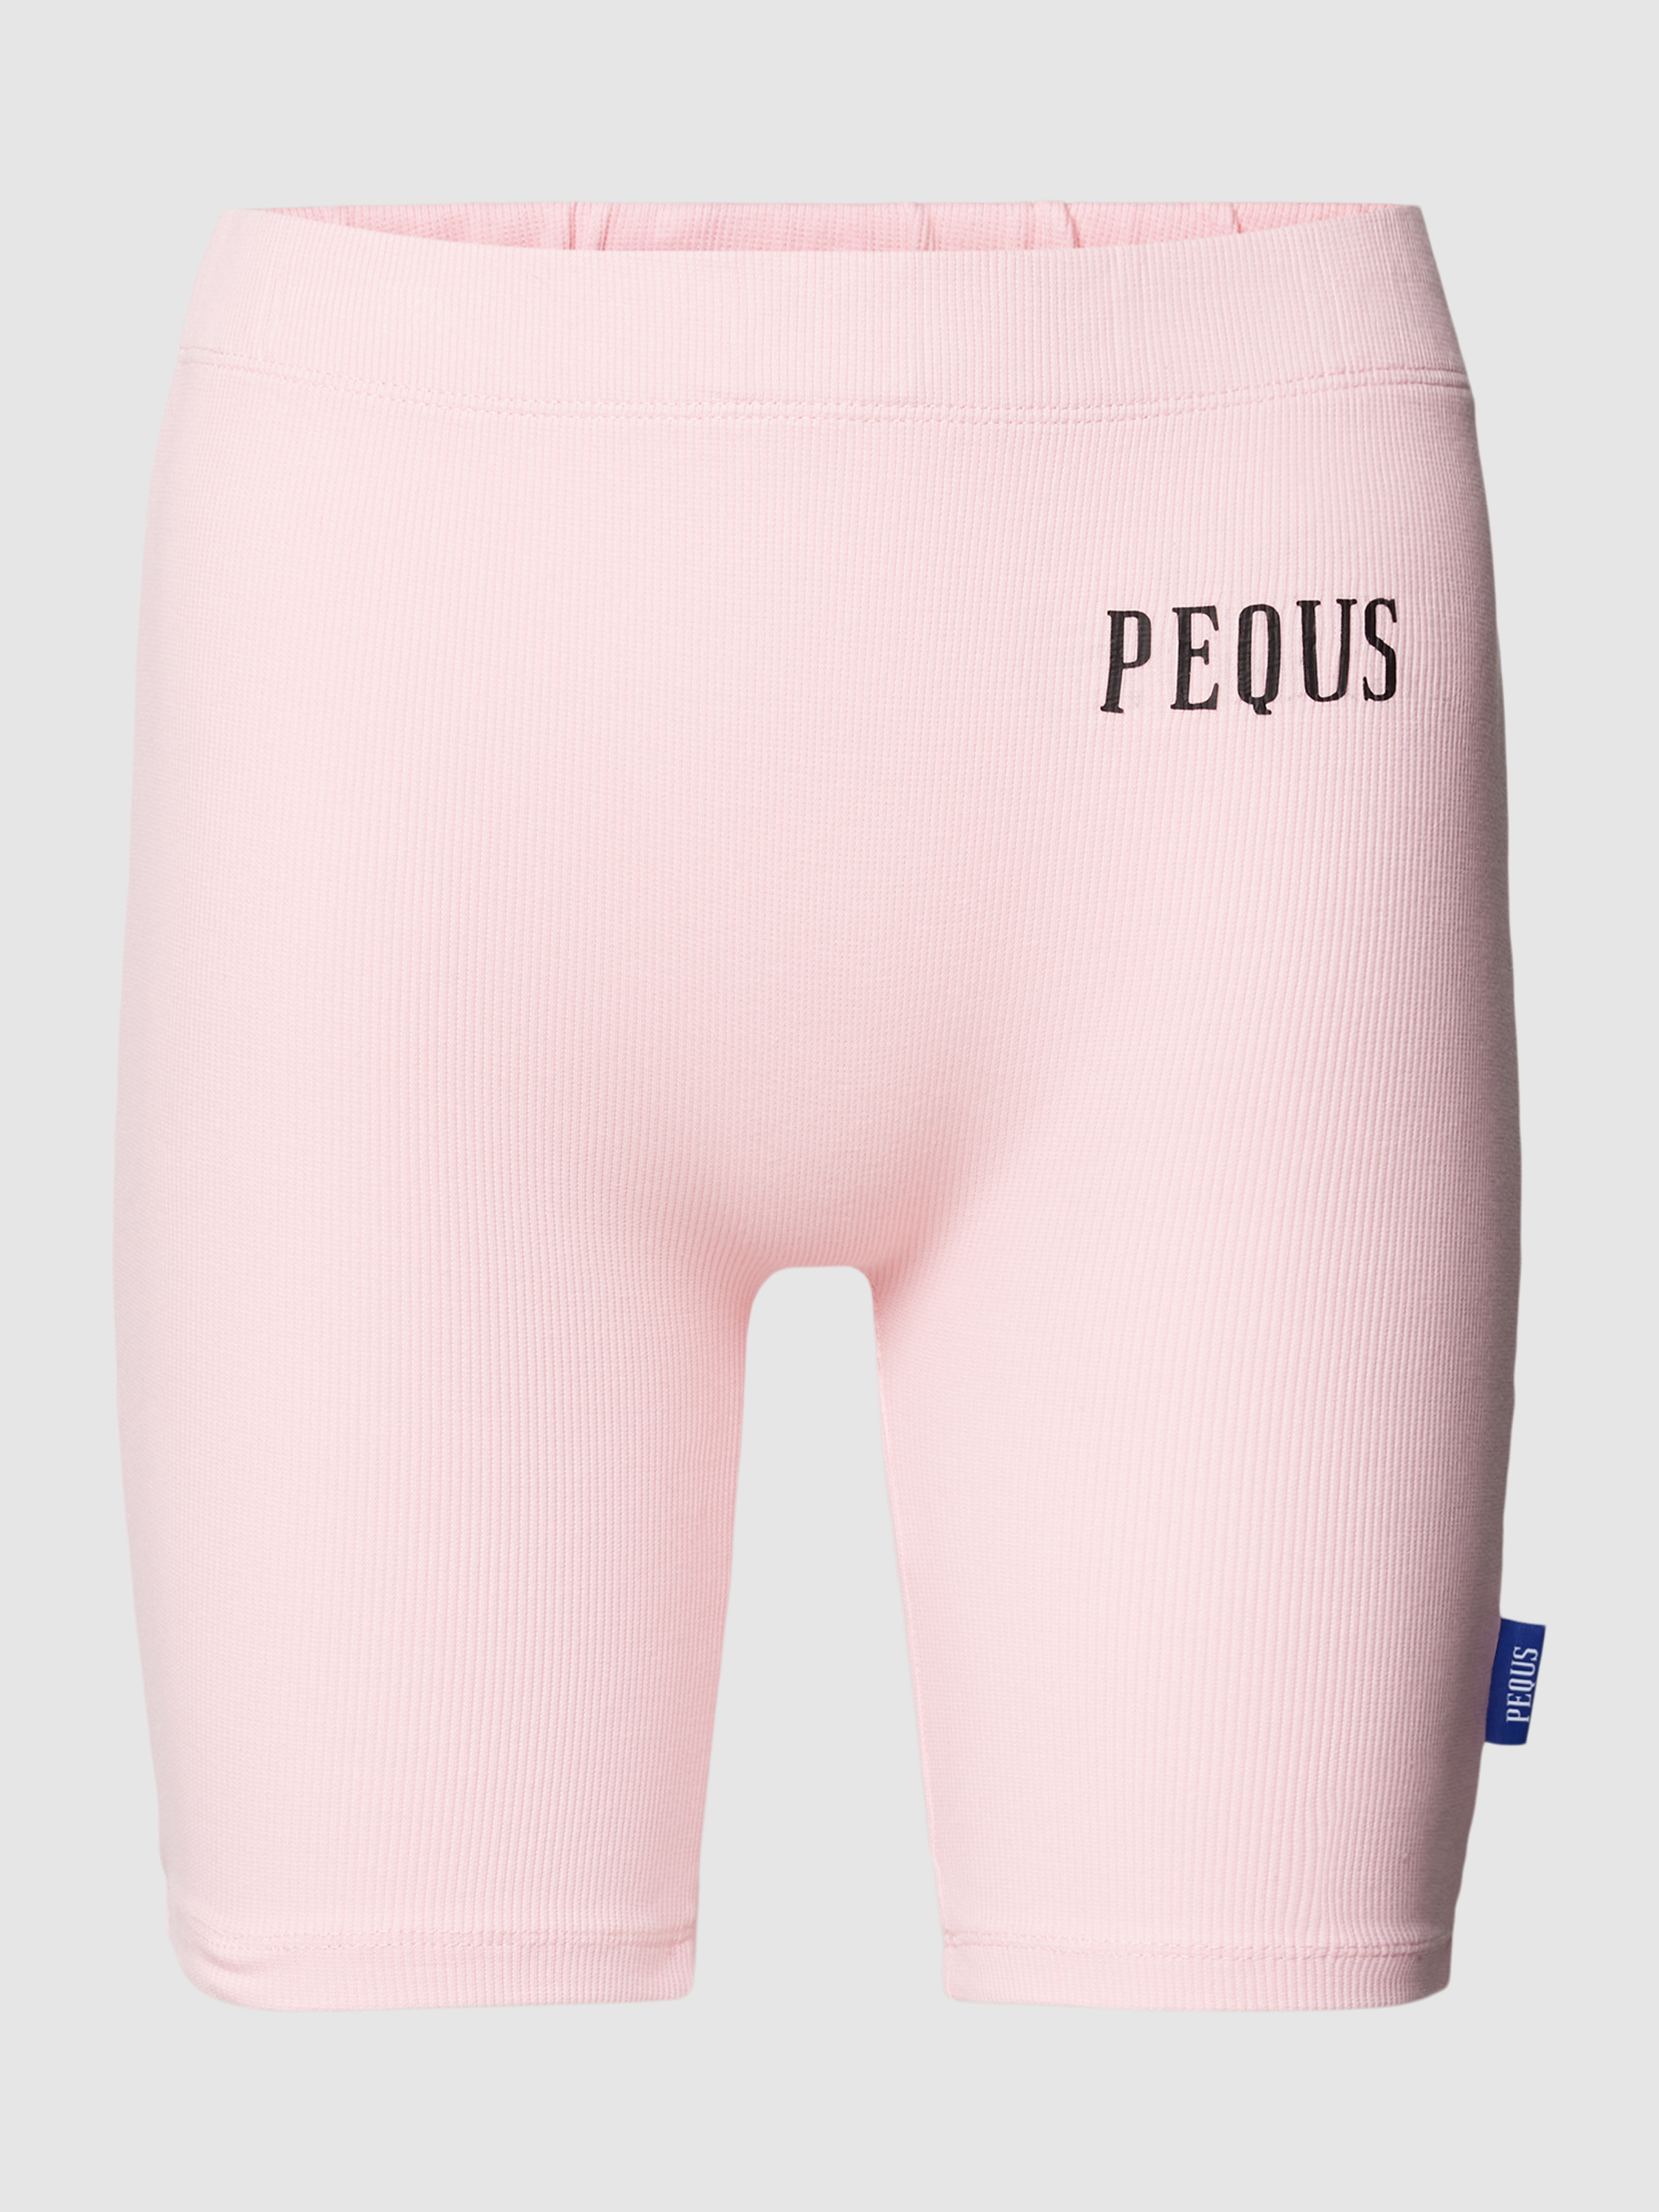 Трикотажные шорты женские PEQUS 1821088 розовые XS (доставка из-за рубежа)